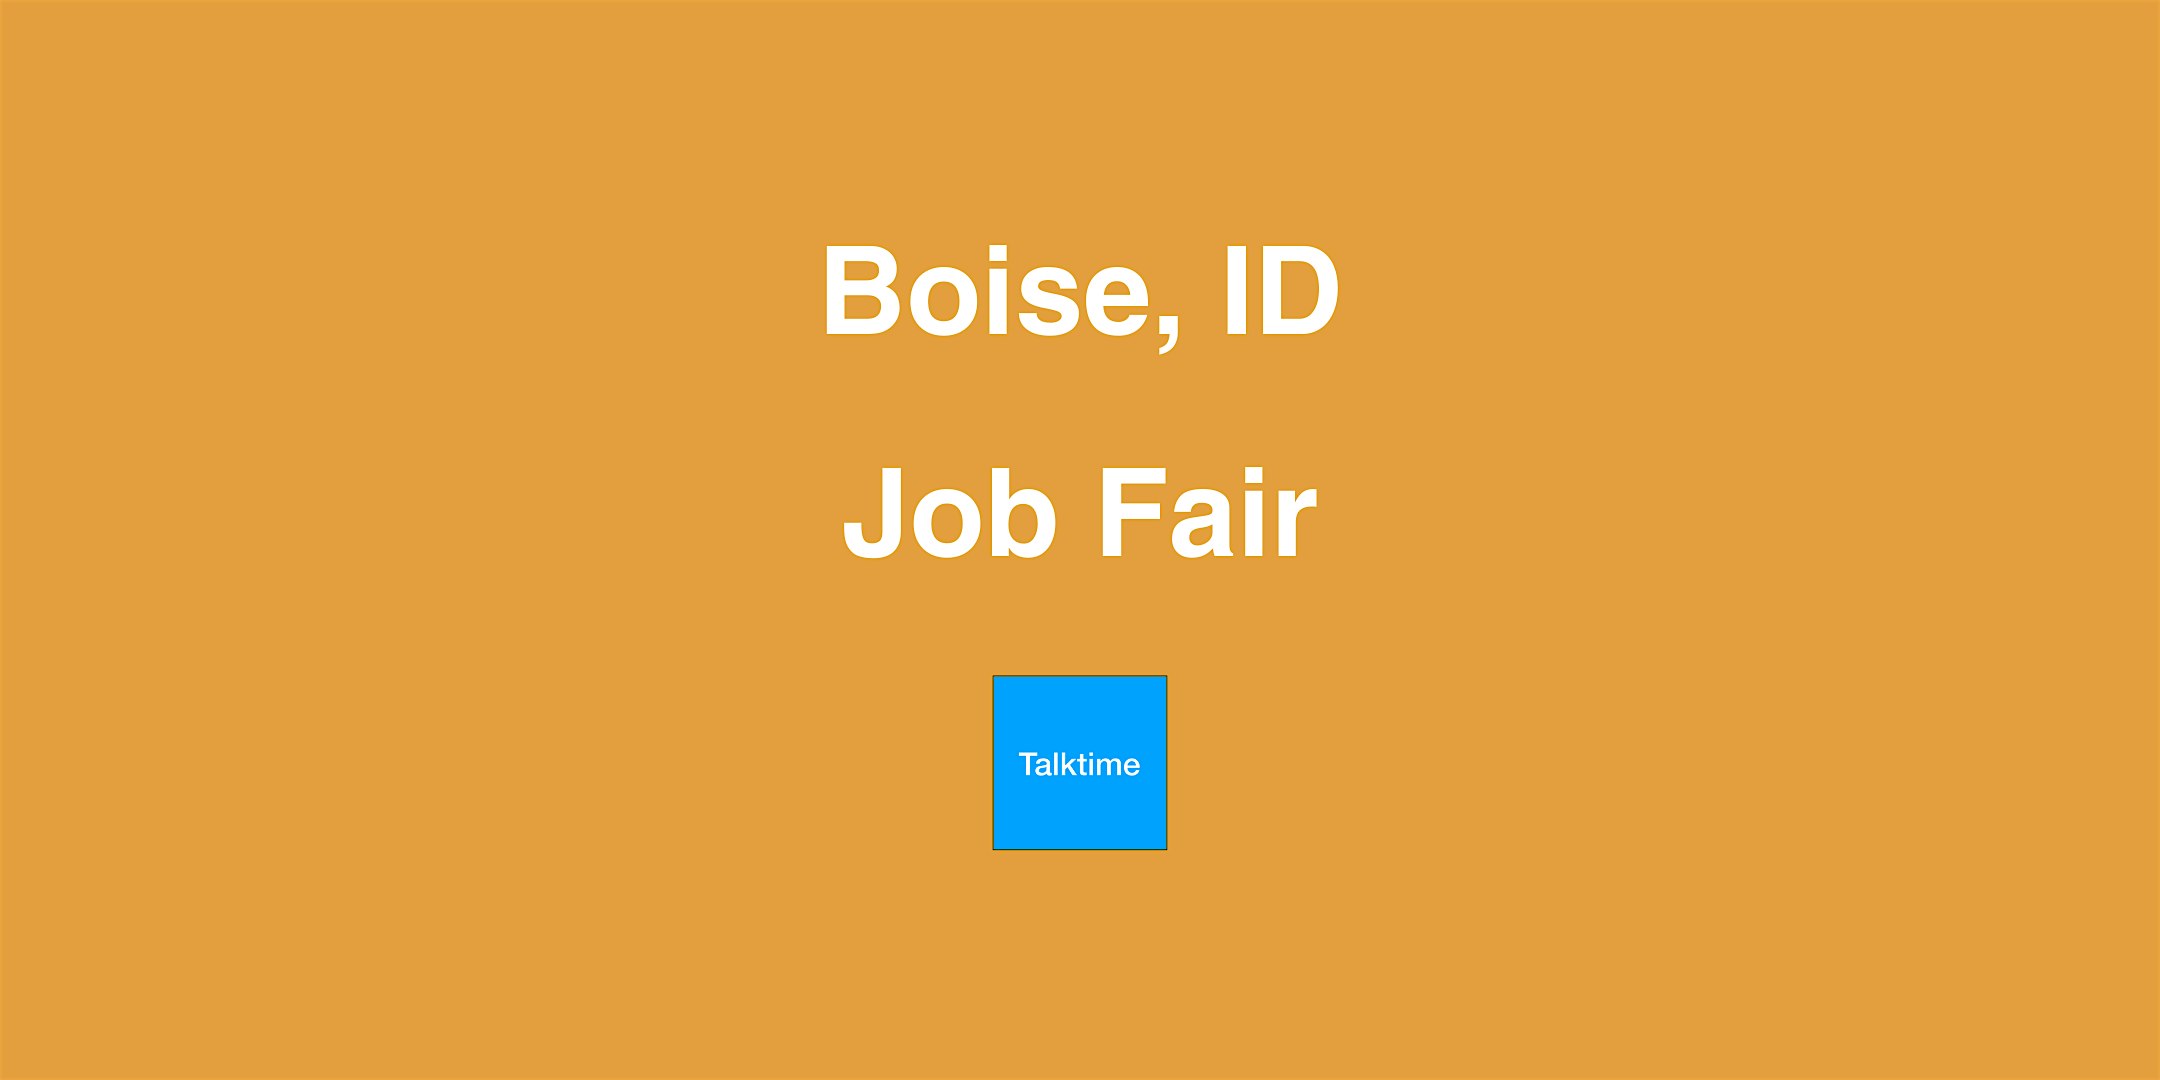 Job Fair - Boise